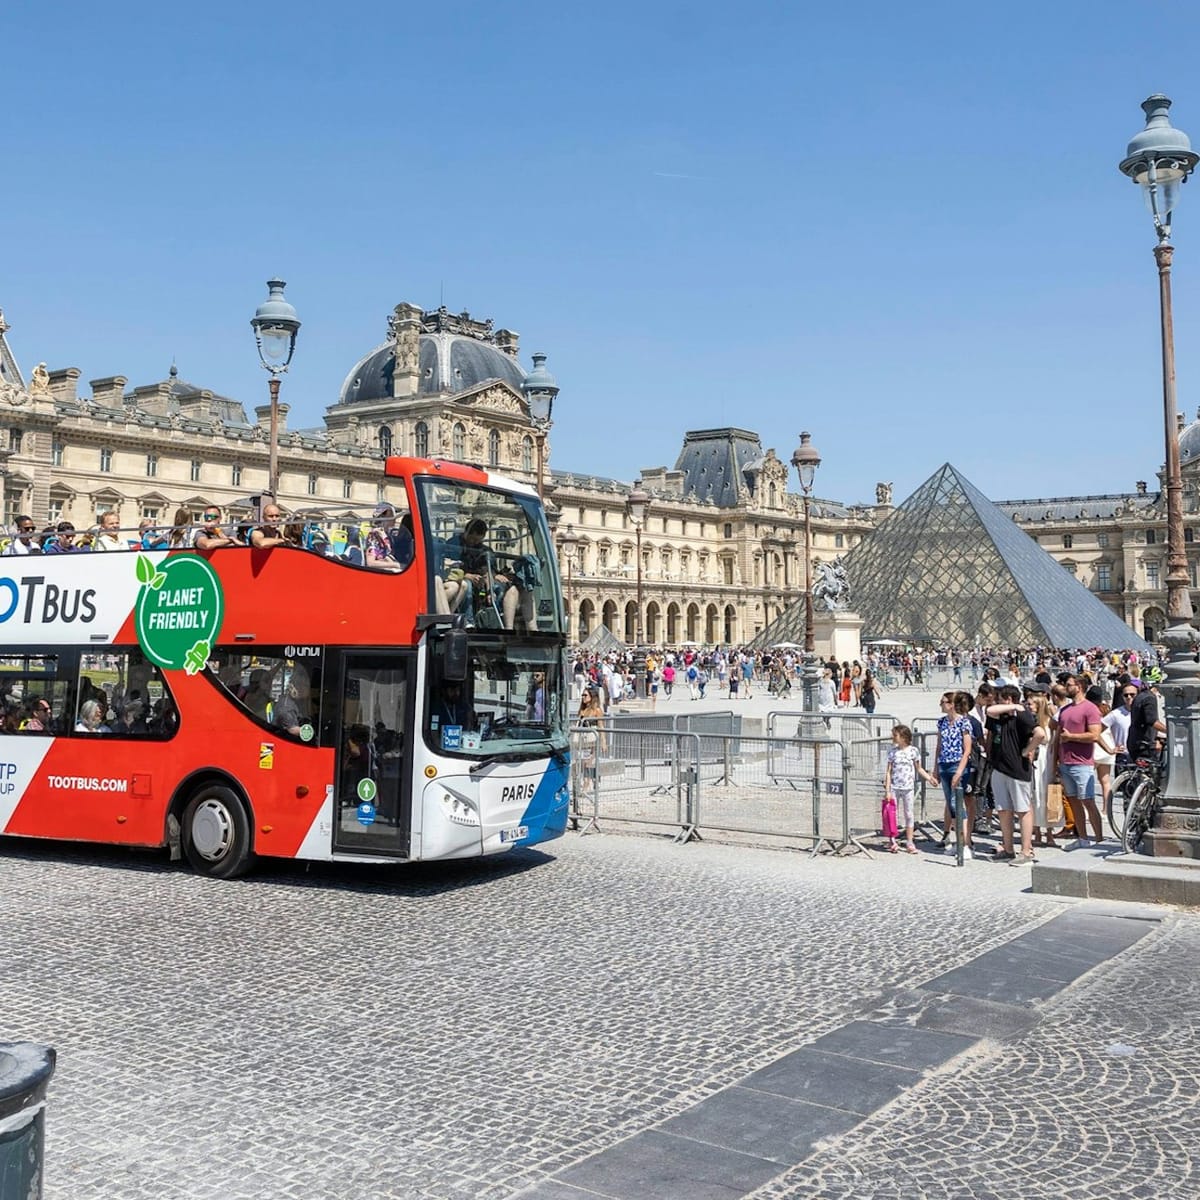 tootbus-paris-capital-of-the-games-hop-on-hop-off-bus-tour_1